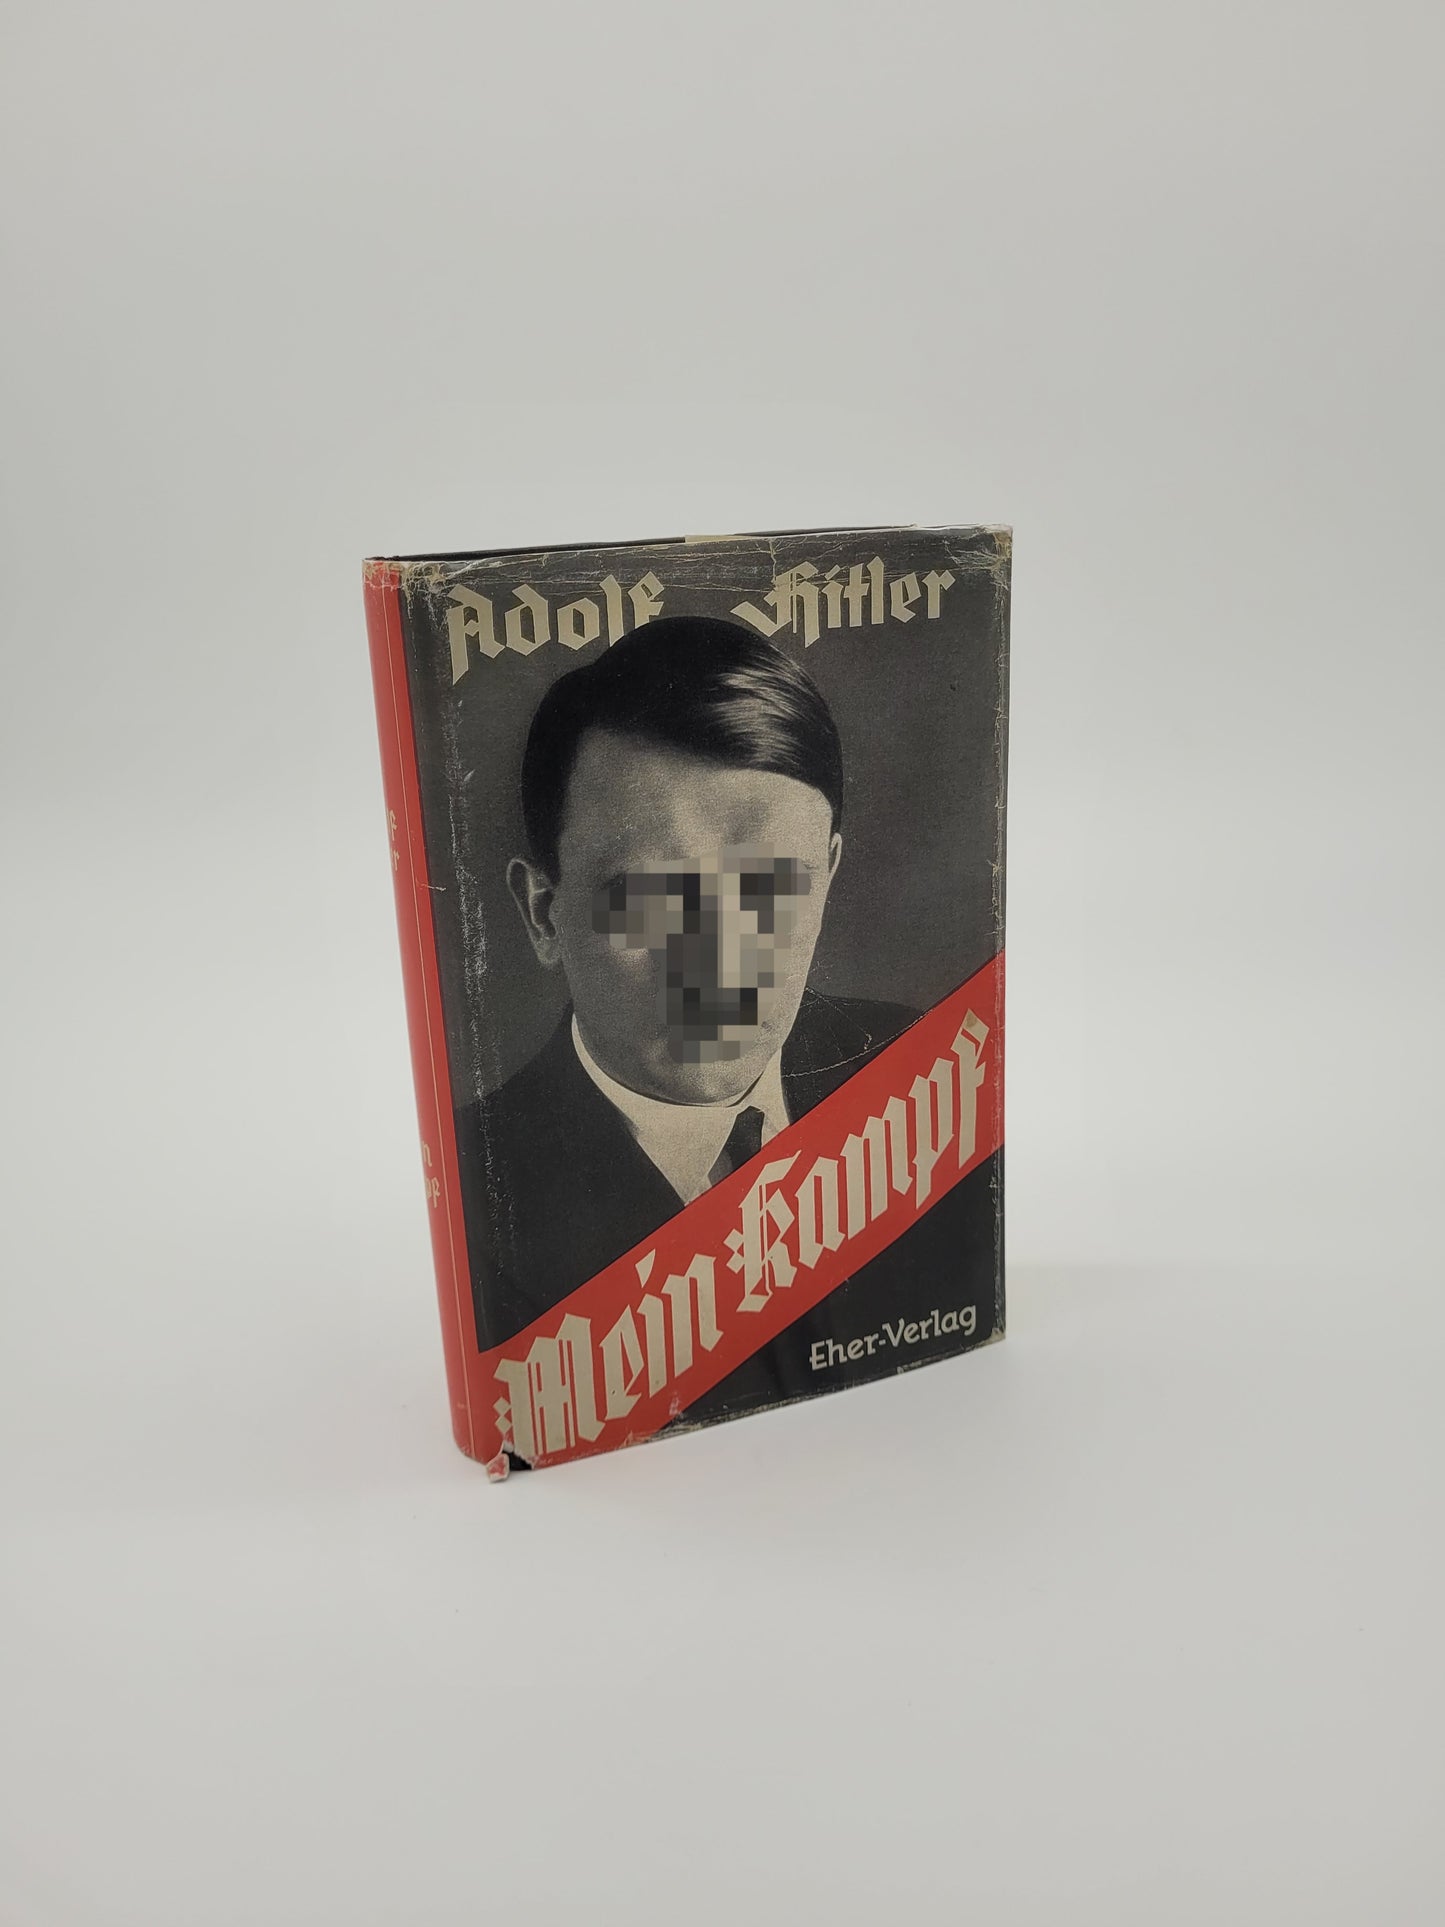 Mein Kampf Volksausgabe 1938